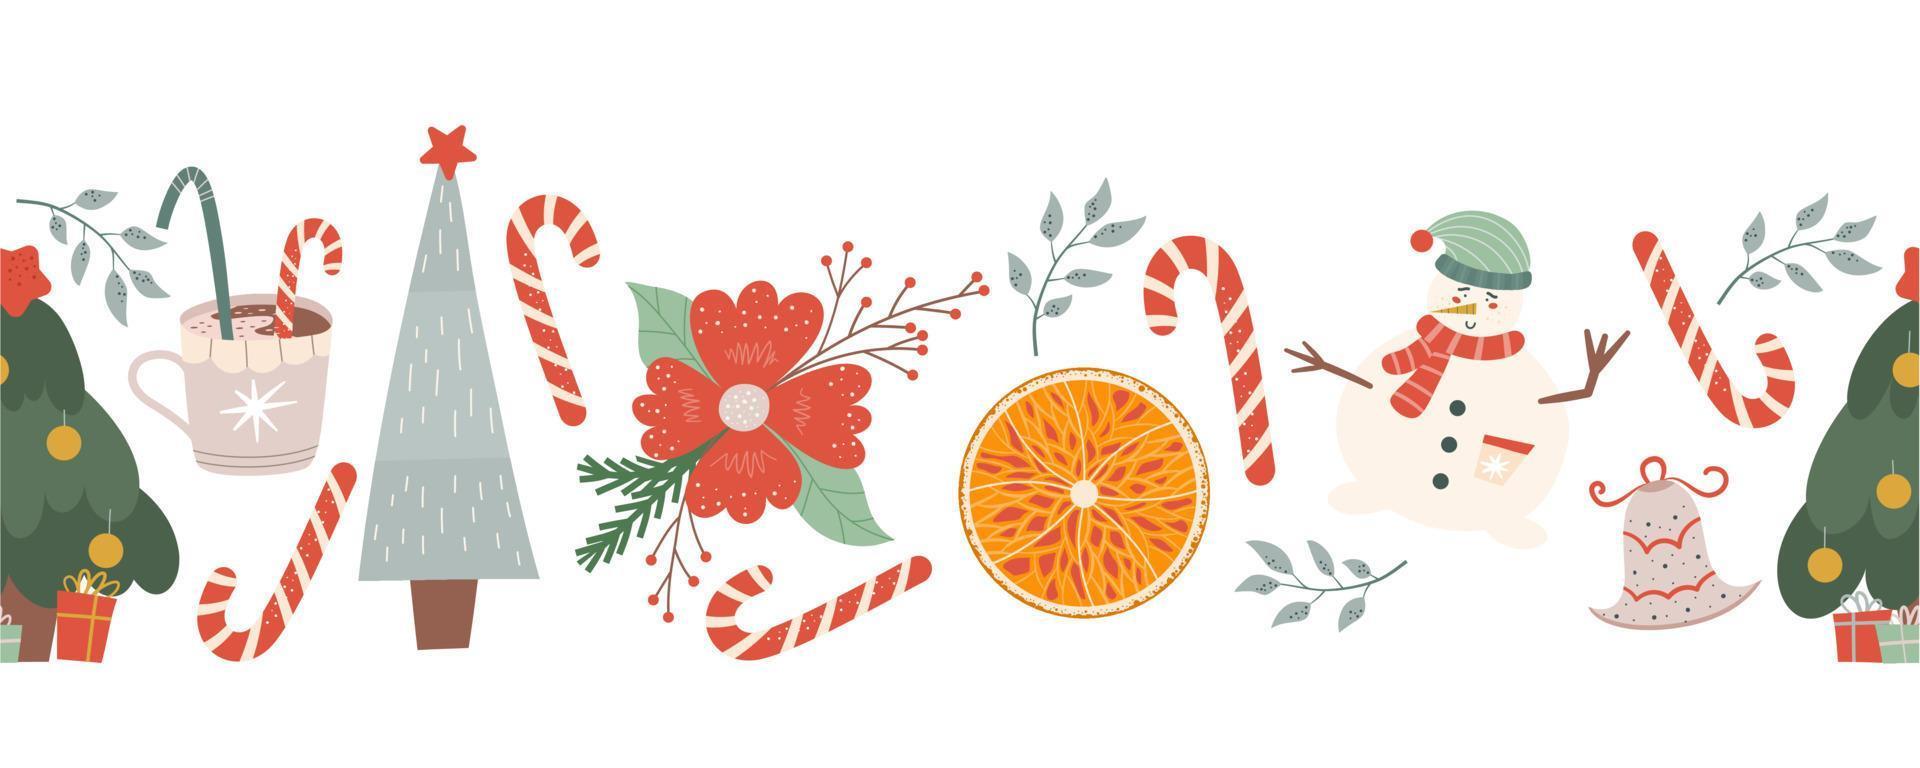 Winter nahtlose Grenze mit Süßigkeiten, Tannen und Schneemann, Orange und Neujahrsblume. Weihnachten nahtlose Muster. Vektor-Illustration im flachen Stil. vektor